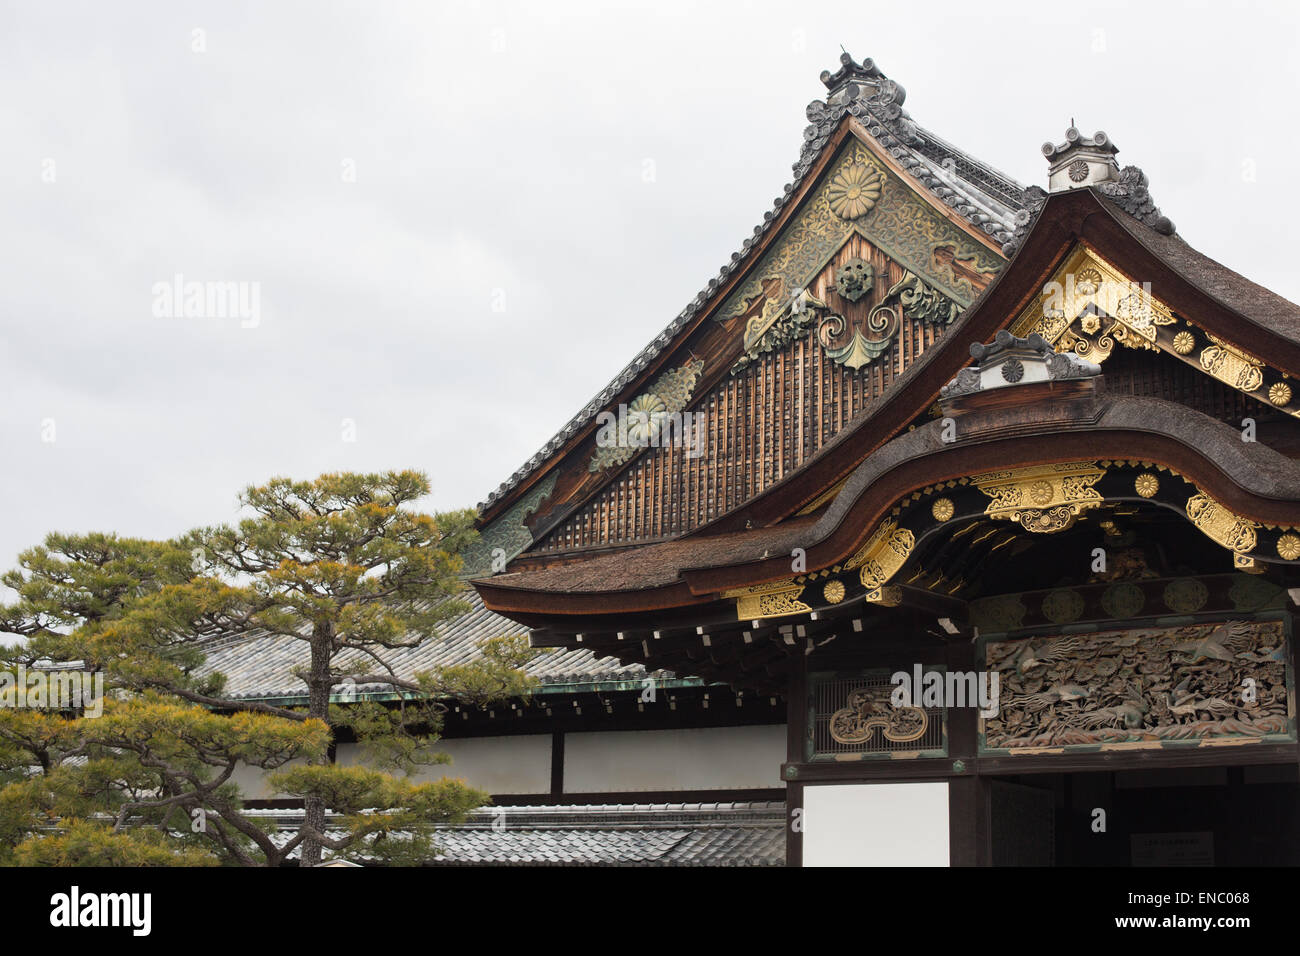 Ninomaru Palace at Nijō Castle, Kyoto, Japan. Stock Photo